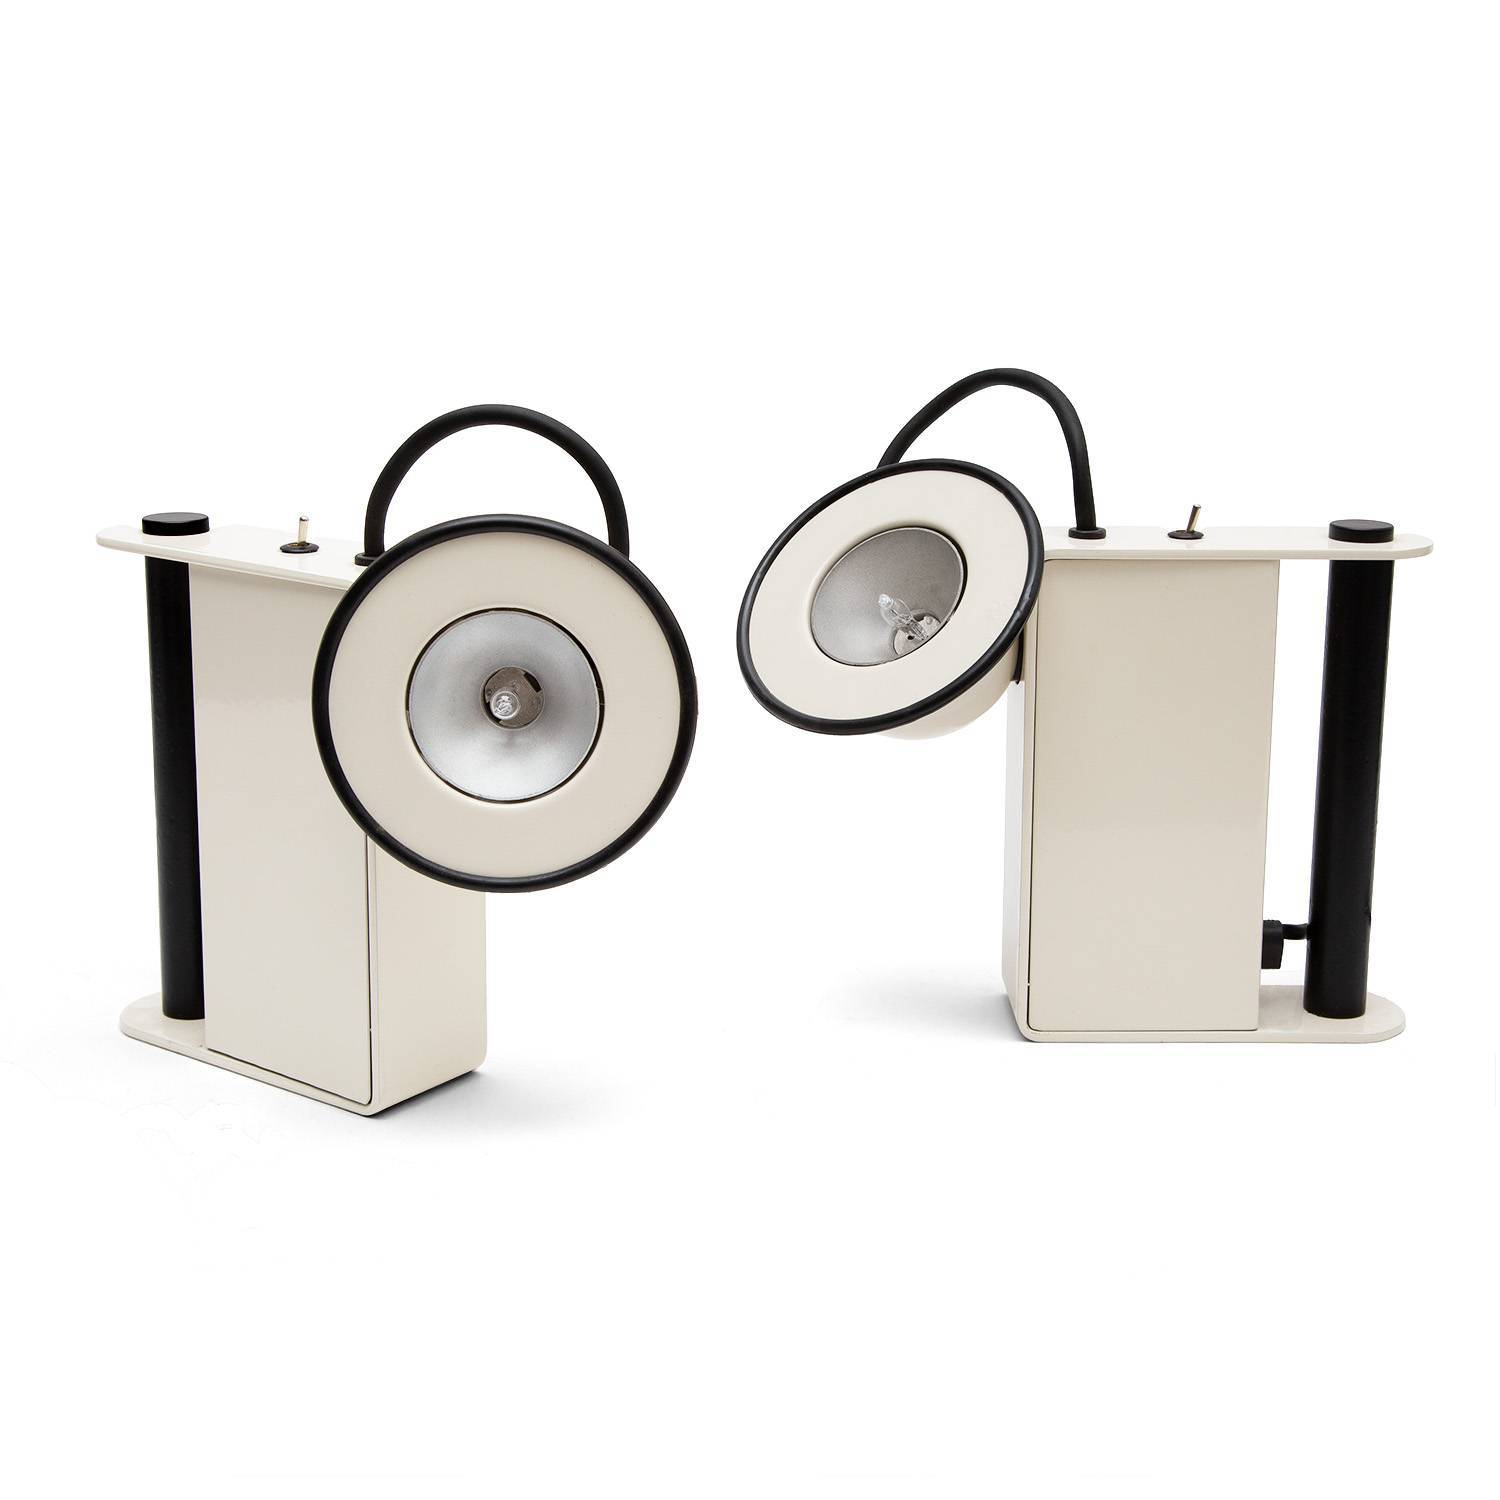 Gae Aulenti (1927-2012) & Piero Castiglioni (1944-), Paire de lampes de chevet Minibox - création de 1979 - 00pp